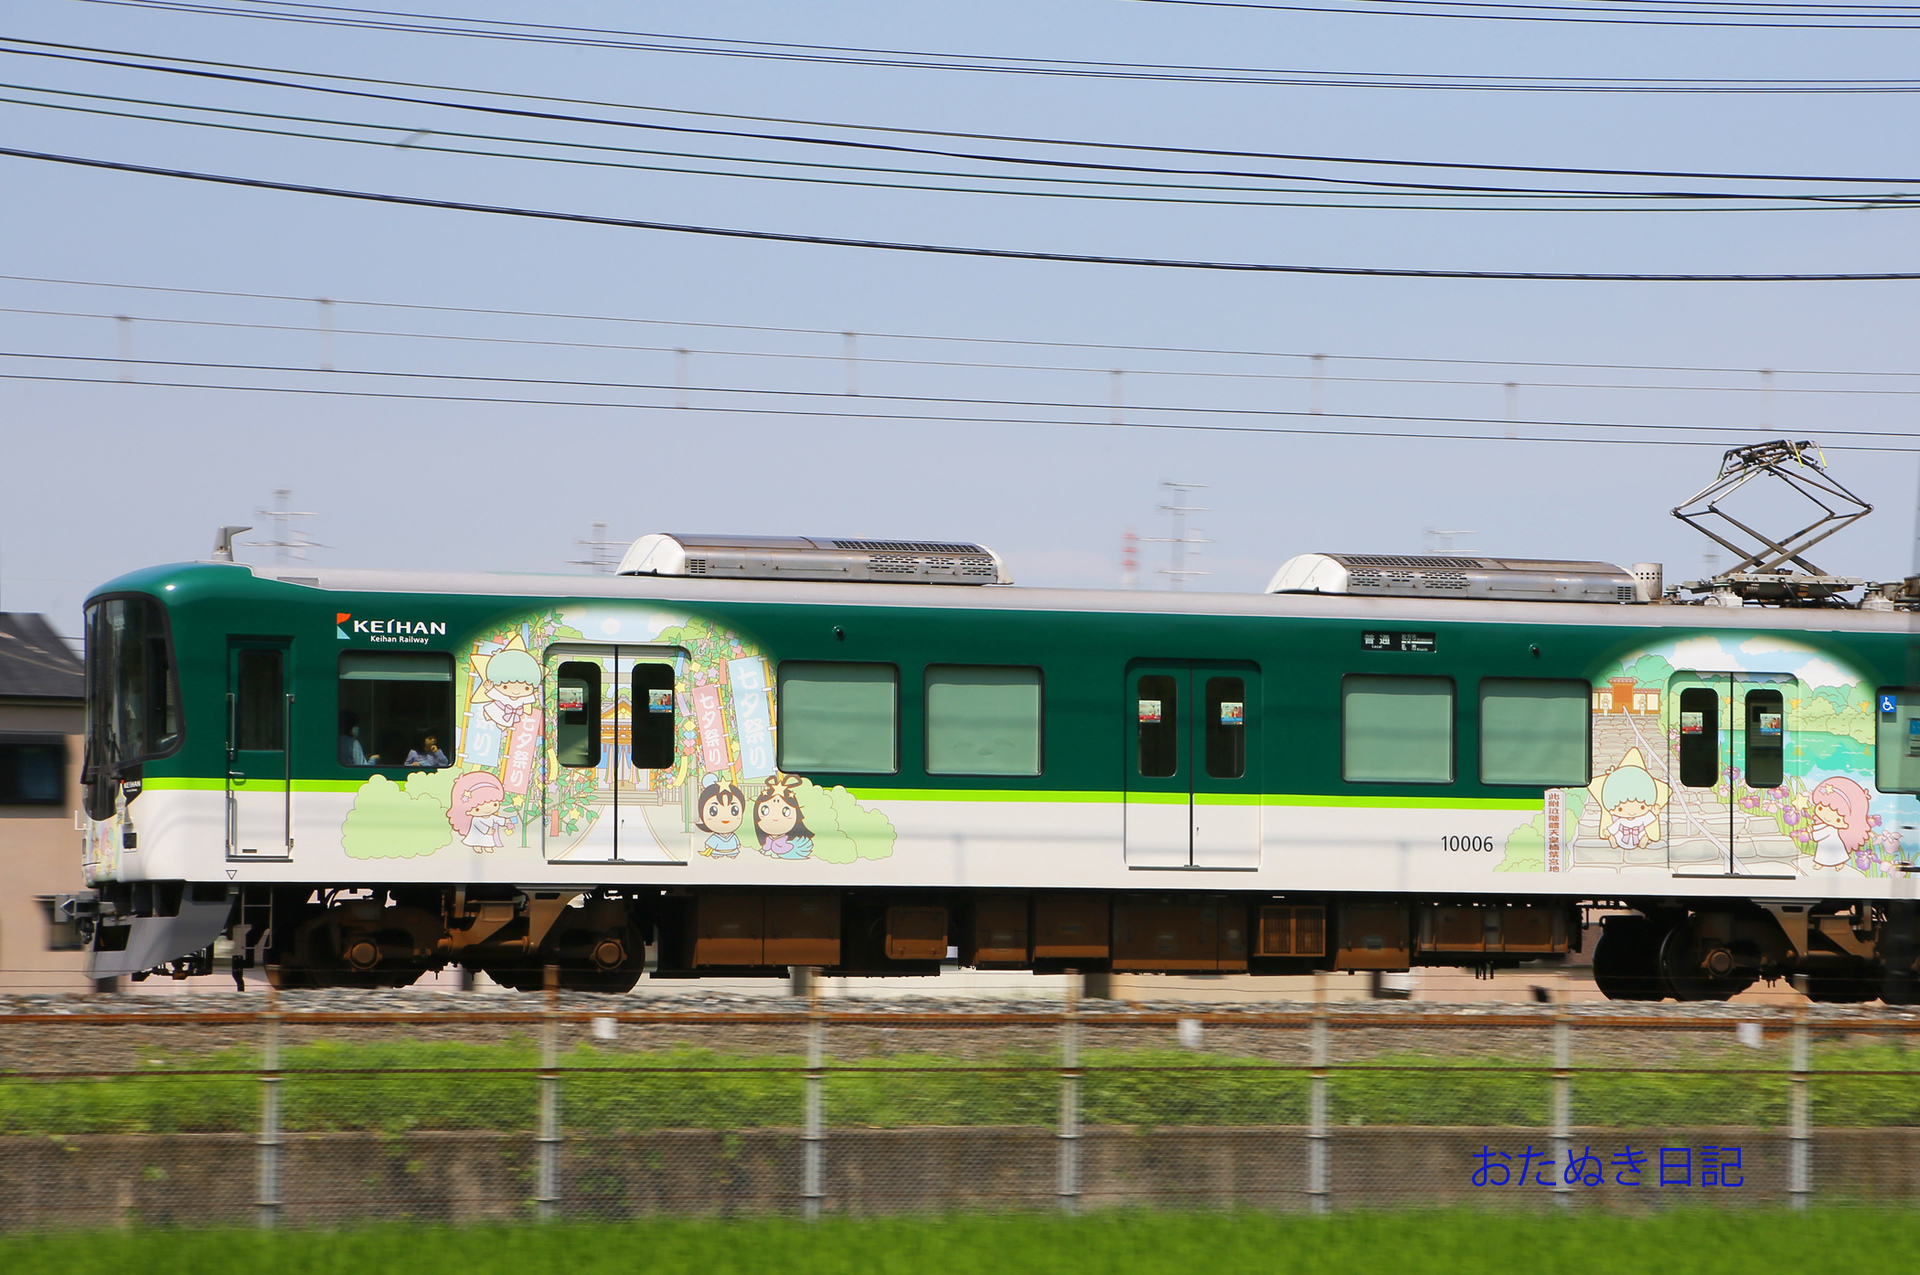 7月21日 京阪電車キキ ララトレインの話 おたぬき日記